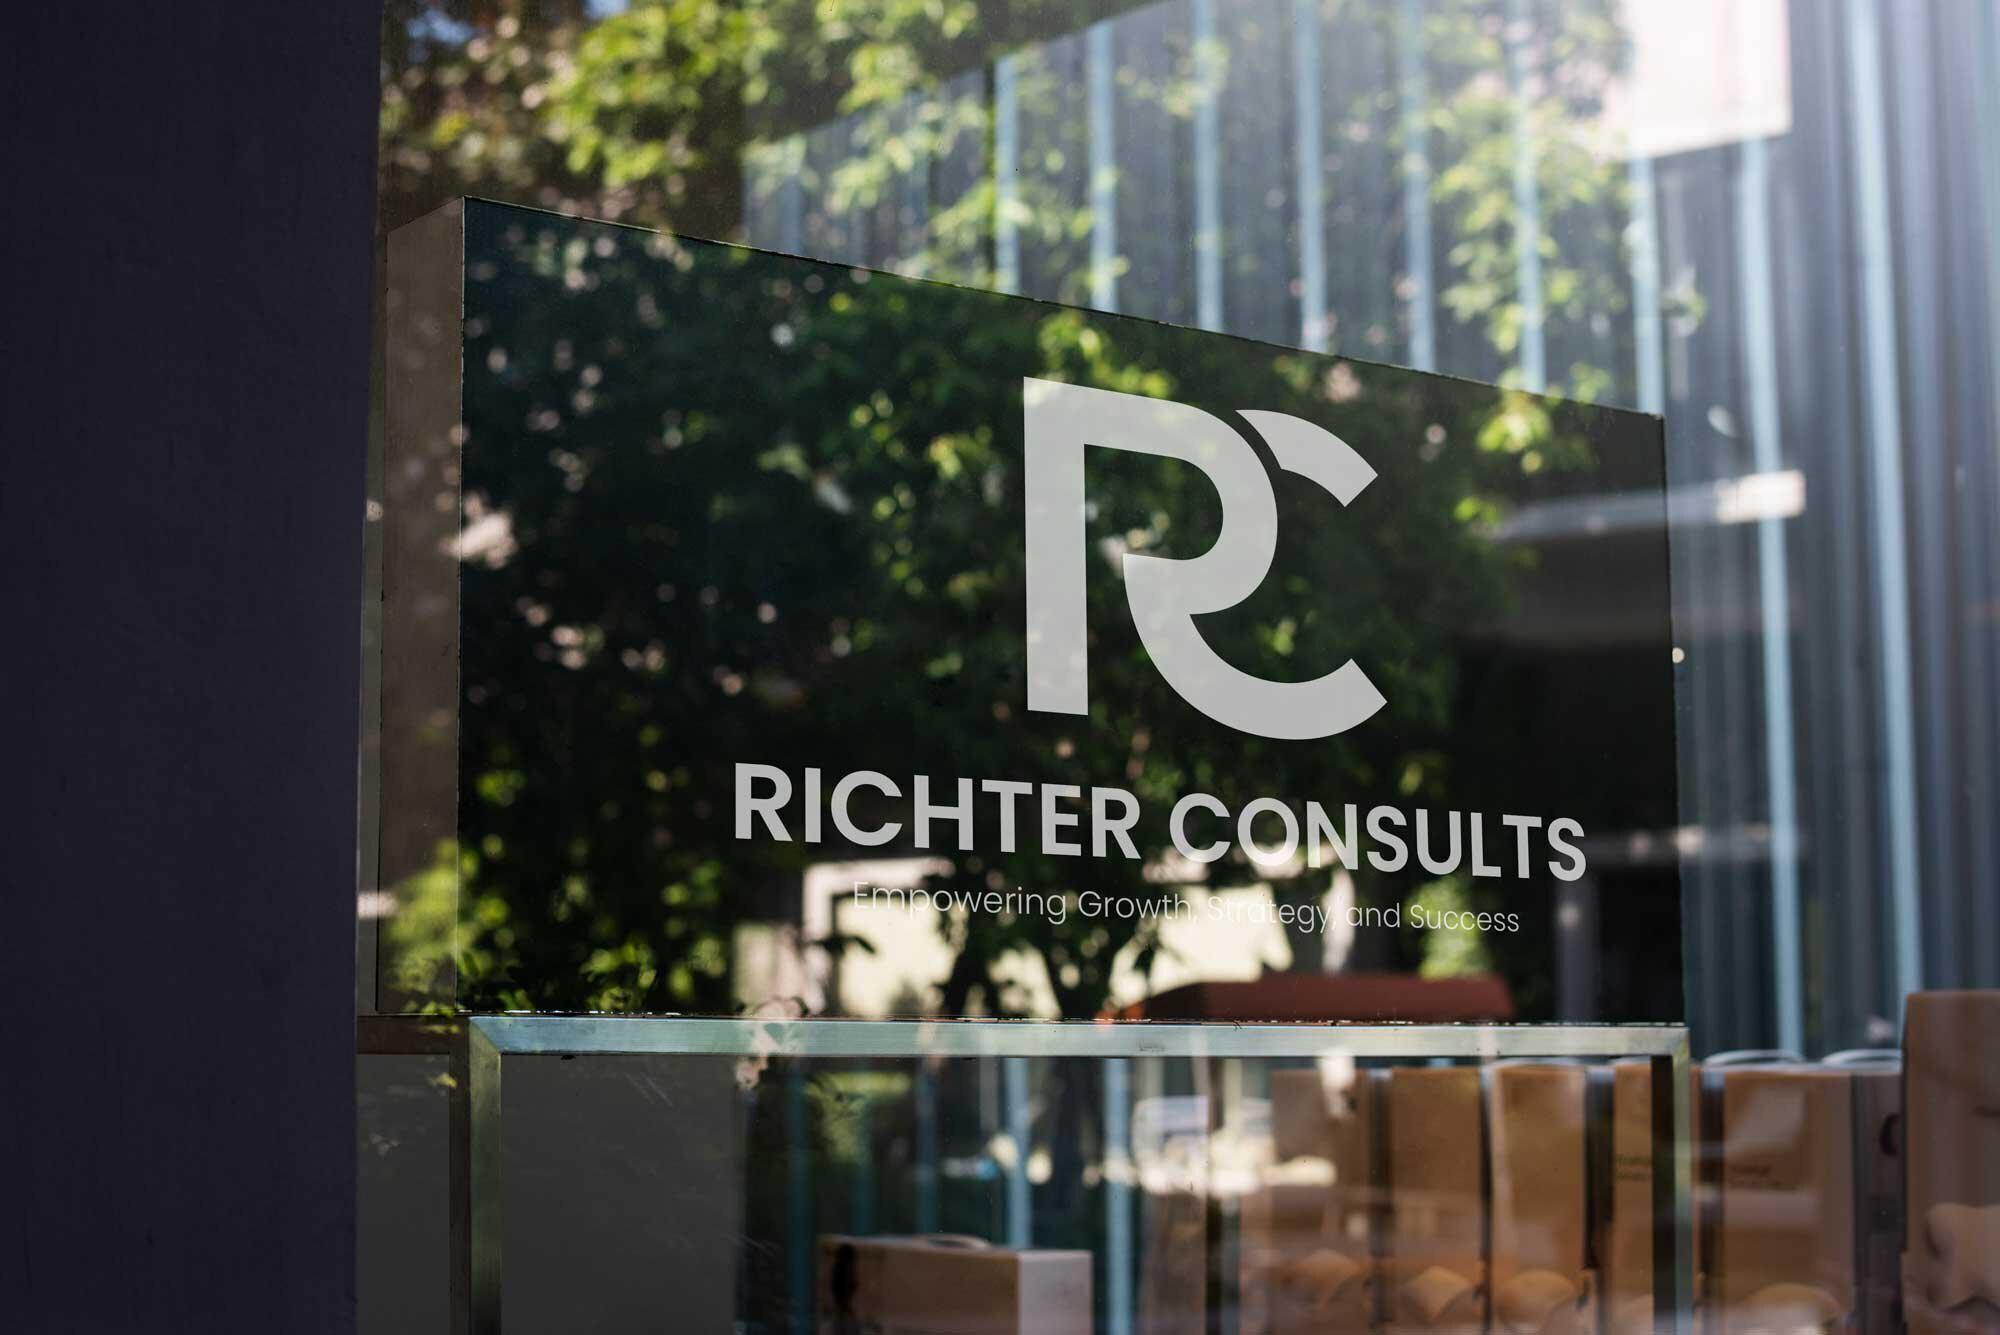 Bilder Richter Consults - IT Marketing & digitale Strategie